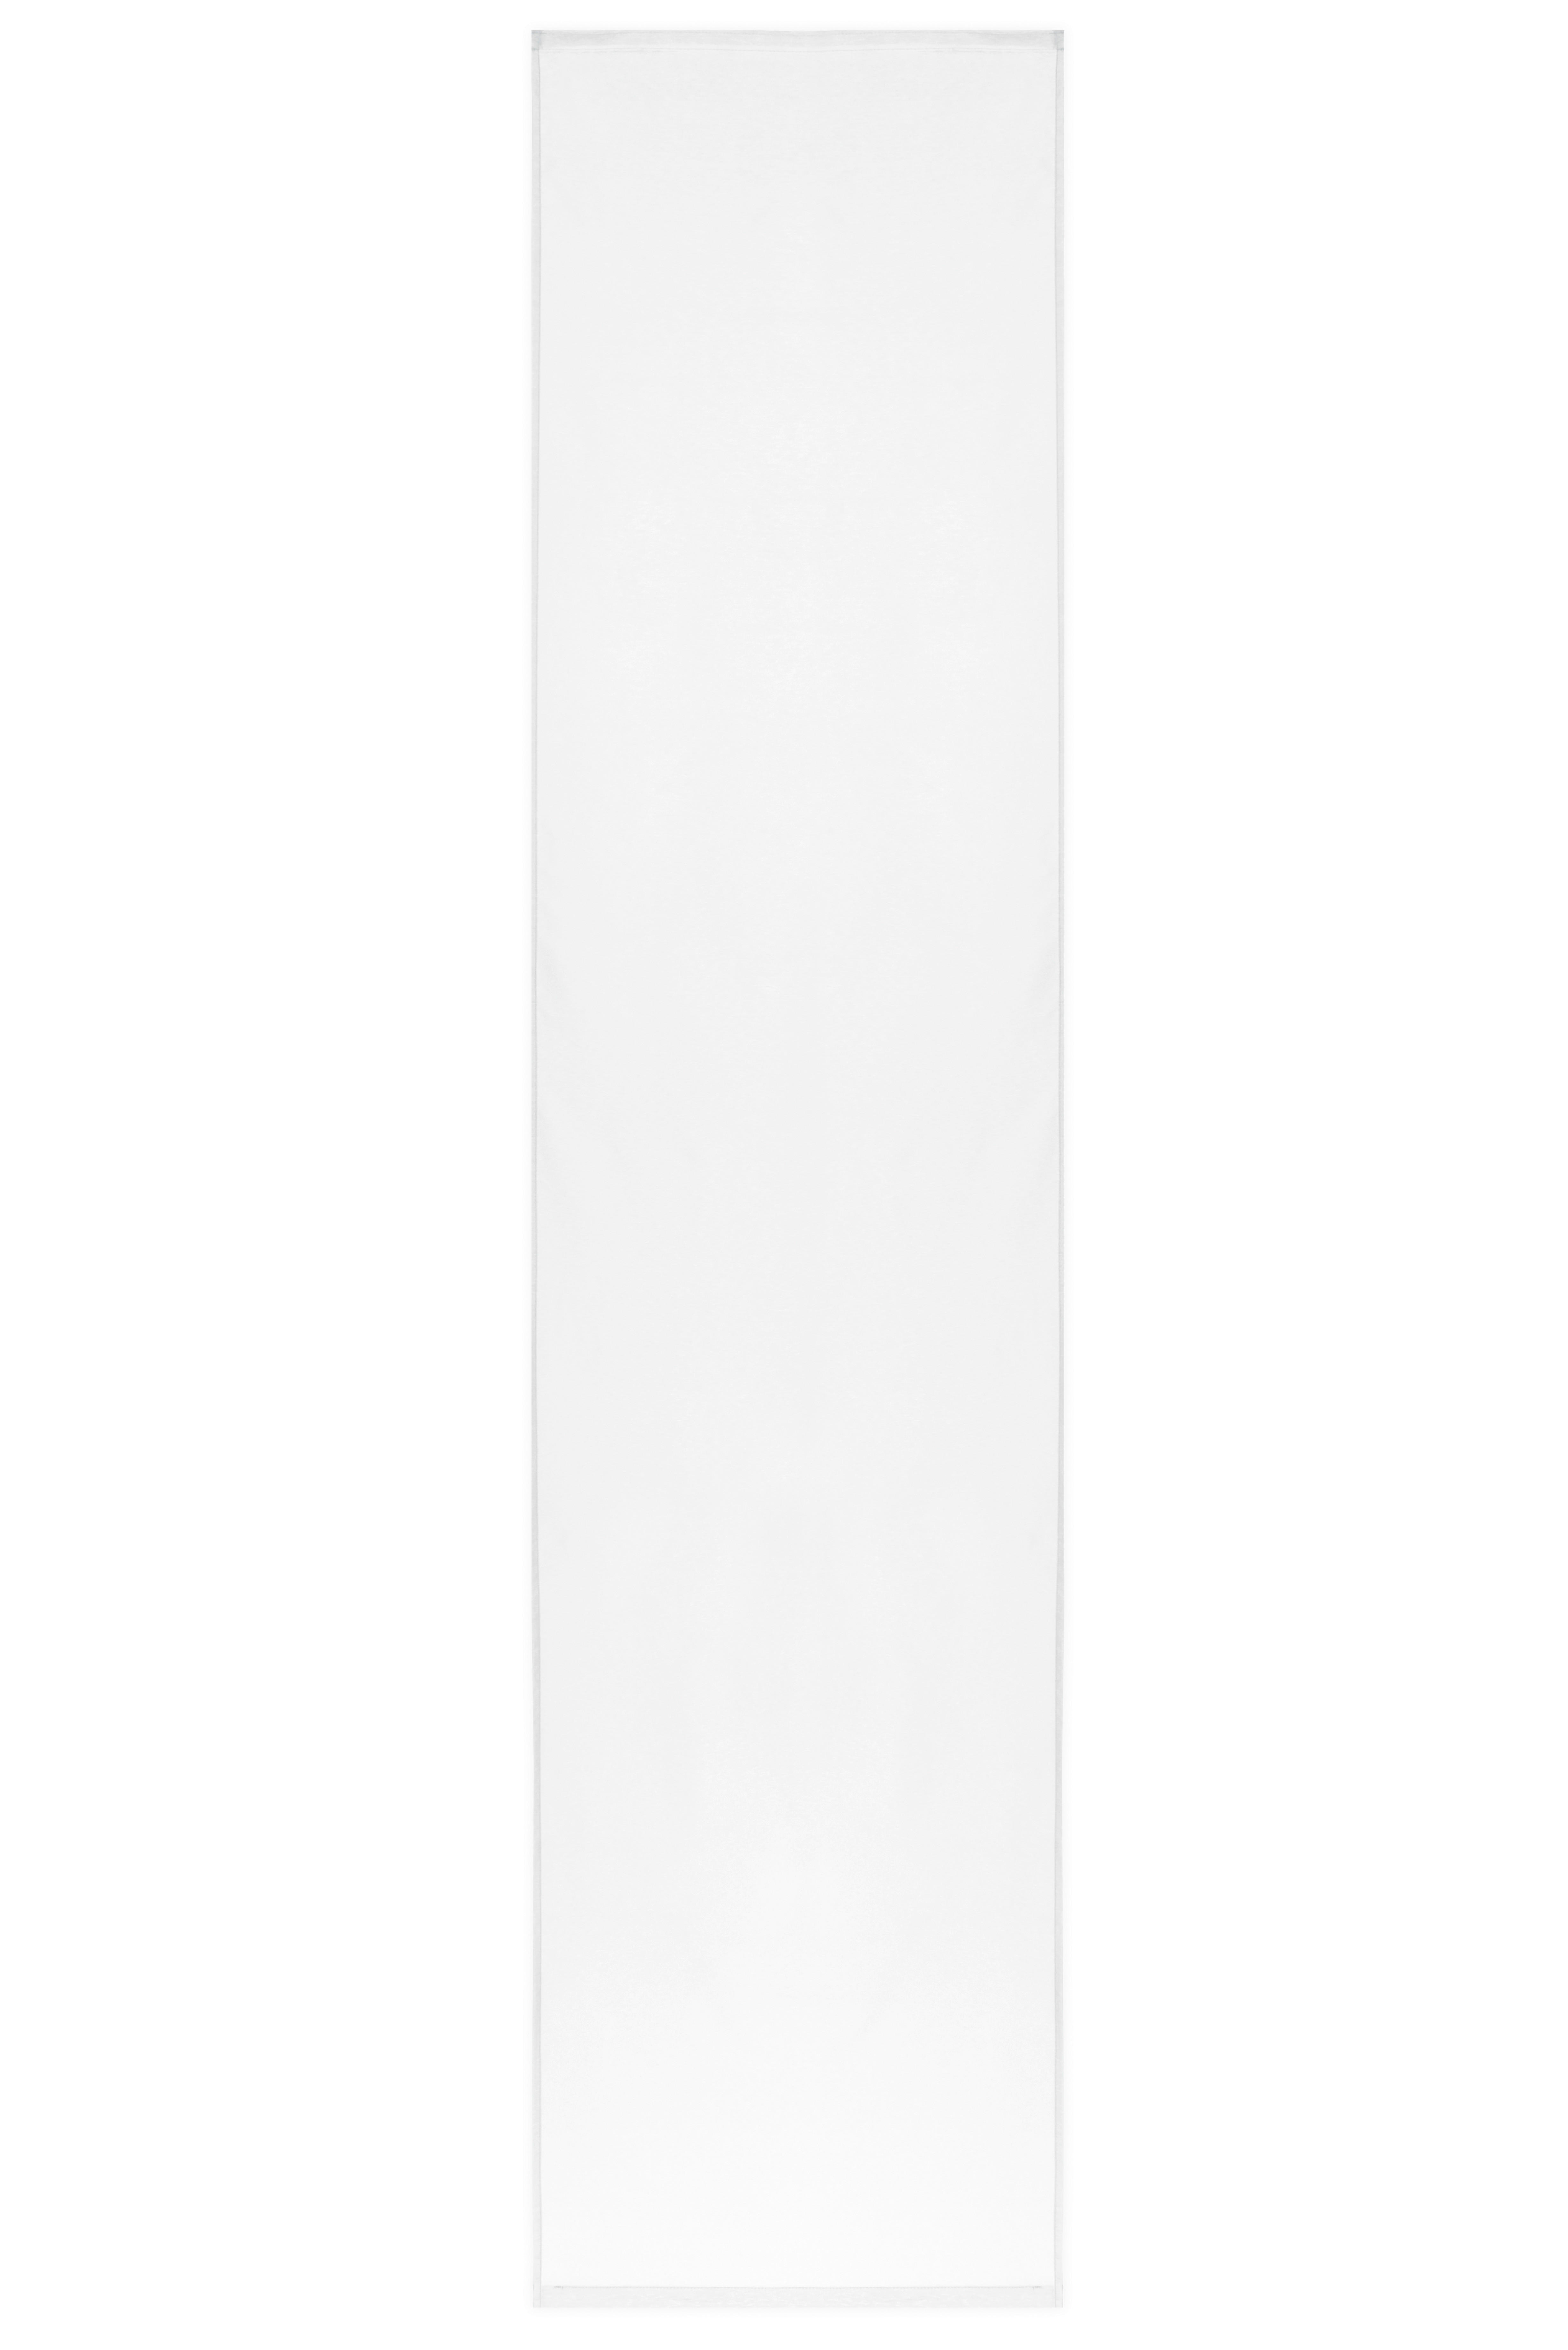 Schiebevorhang Pearl weiß B/L: ca. 60x245 cm Pearl - weiß (60,00/245,00cm) - ACUS design collection